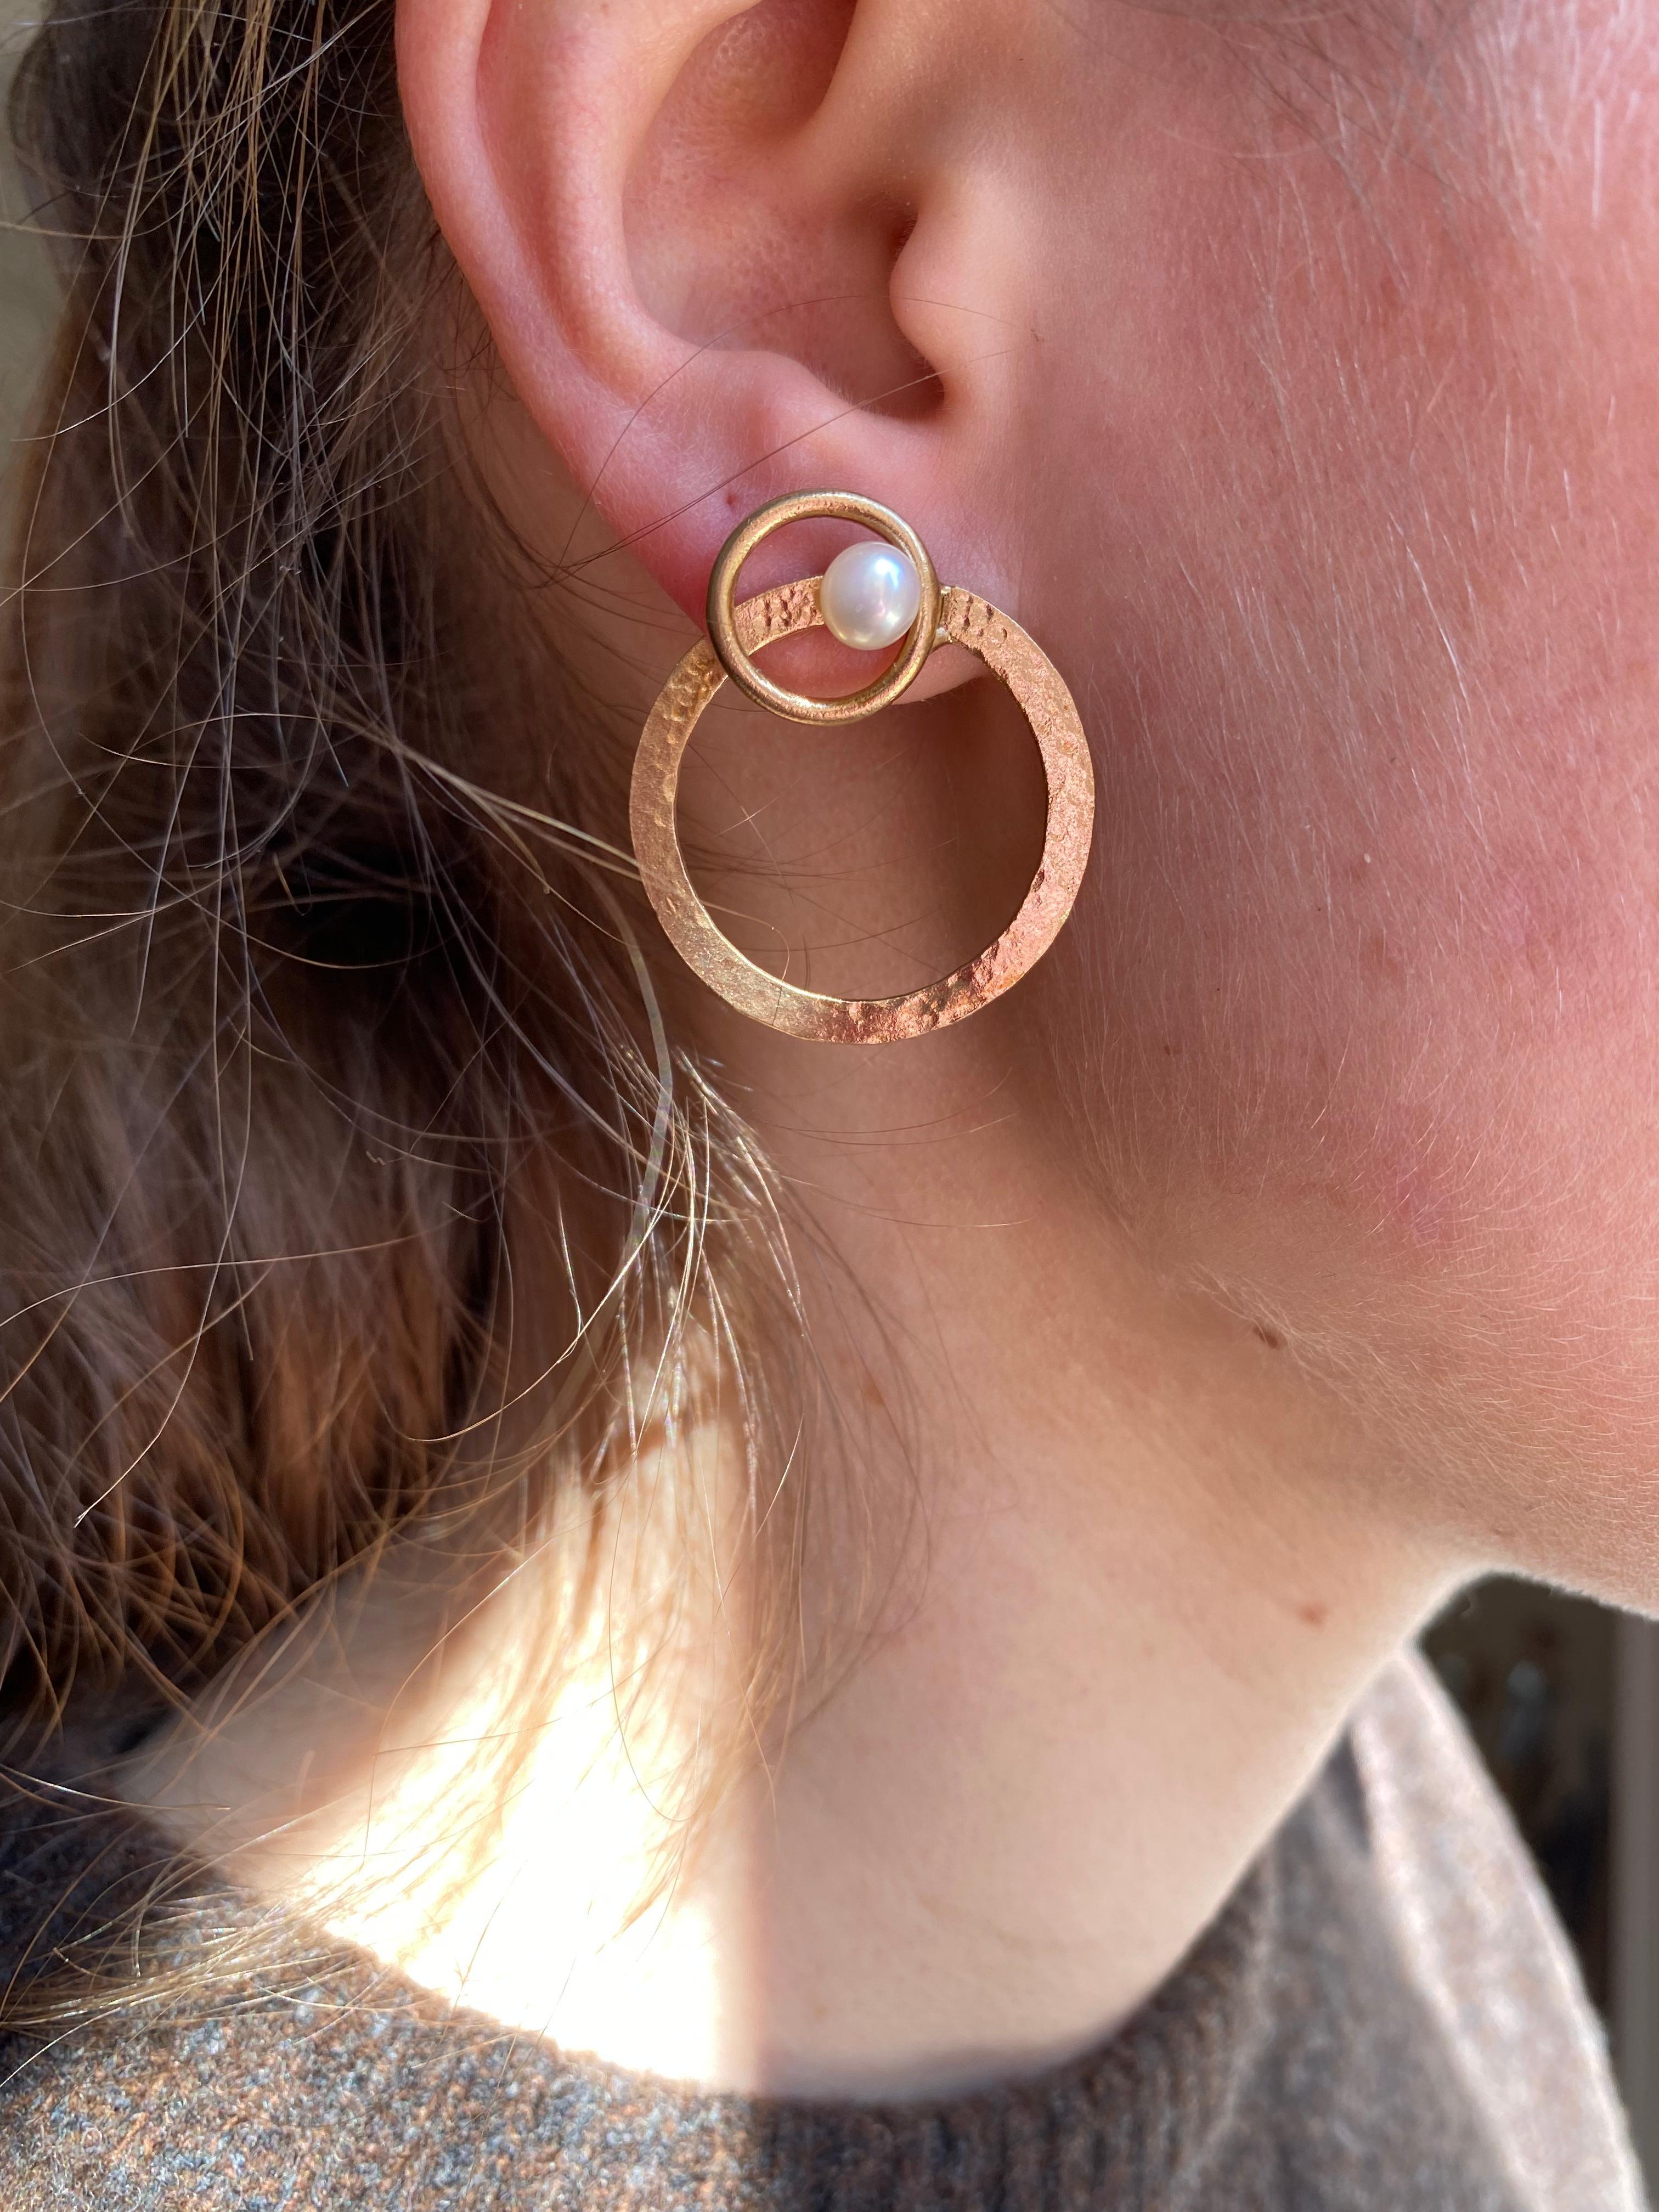 Wir stellen die Rossella Ugolini Design Collection vor und präsentieren die gehämmerten 18 Karat Gelbgold Open Hoop Circle Artisan Modern Earrings. Diese sorgfältig von Hand gefertigten Ohrringe bestechen durch eine weiße Perle, die in das